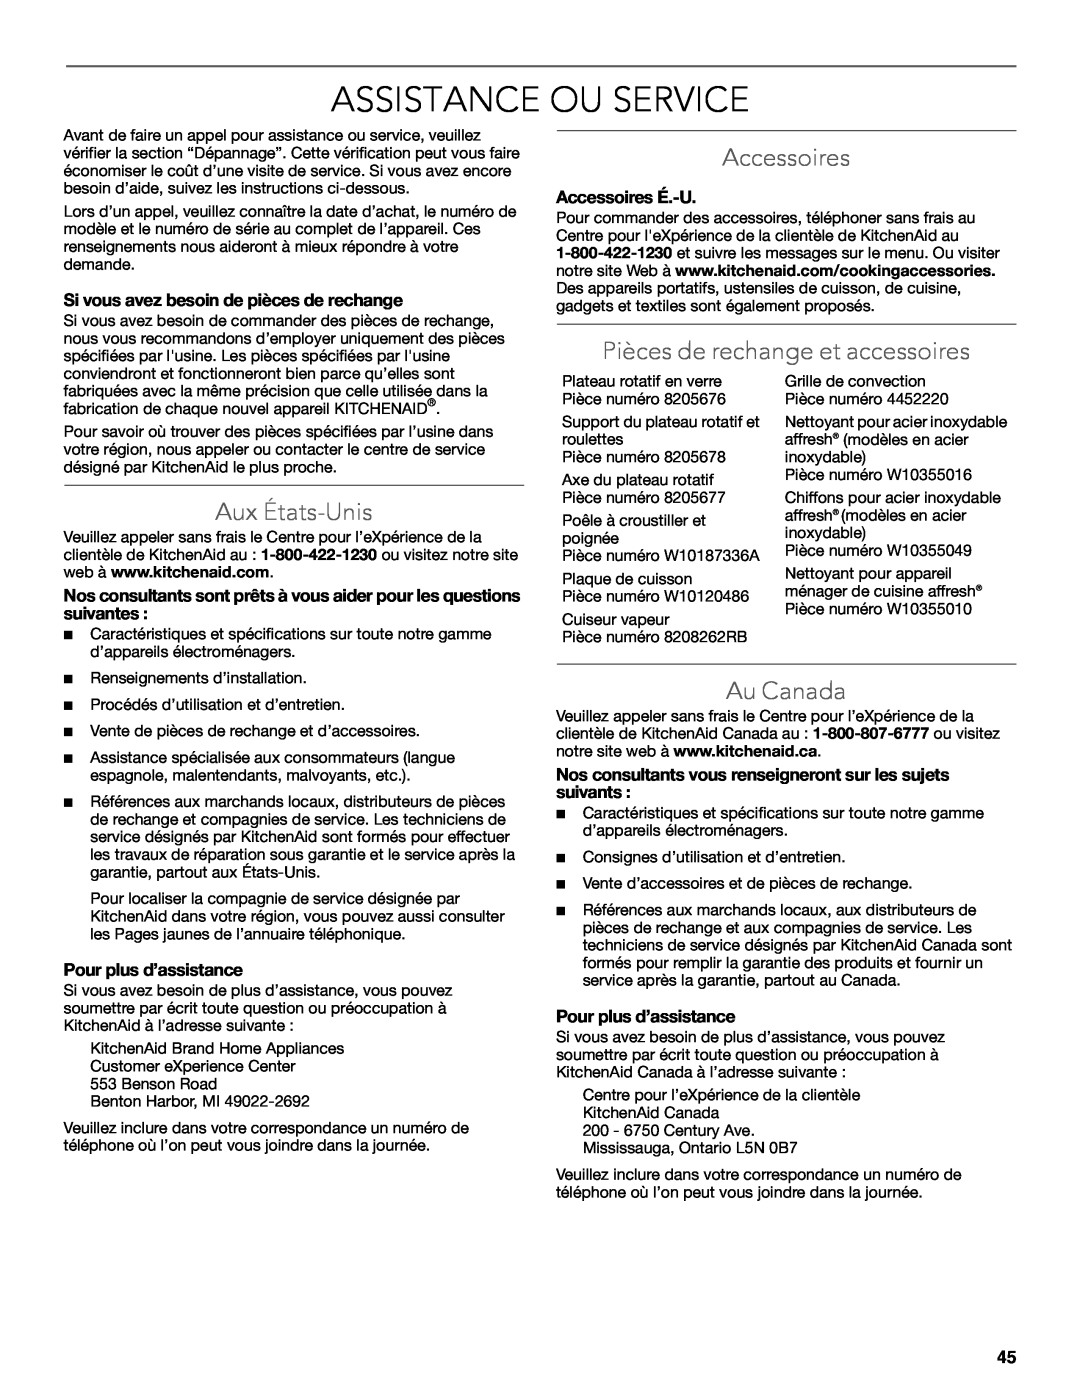 KitchenAid KEMS309B manual Assistance Ou Service, Accessoires, Pièces de rechange et accessoires, Aux États-Unis, Au Canada 